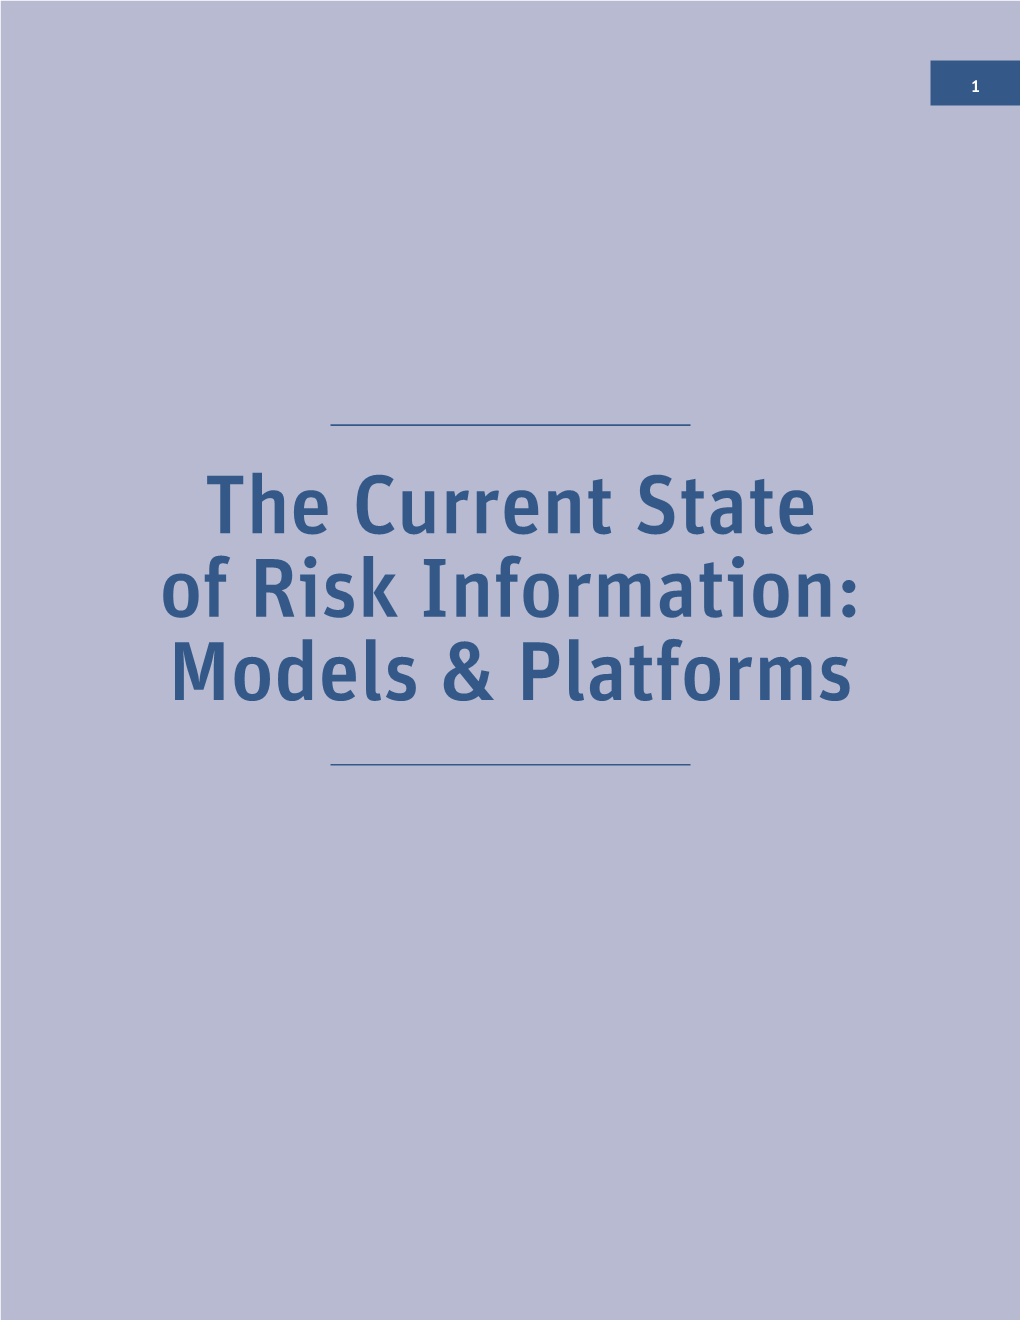 Models & Platforms